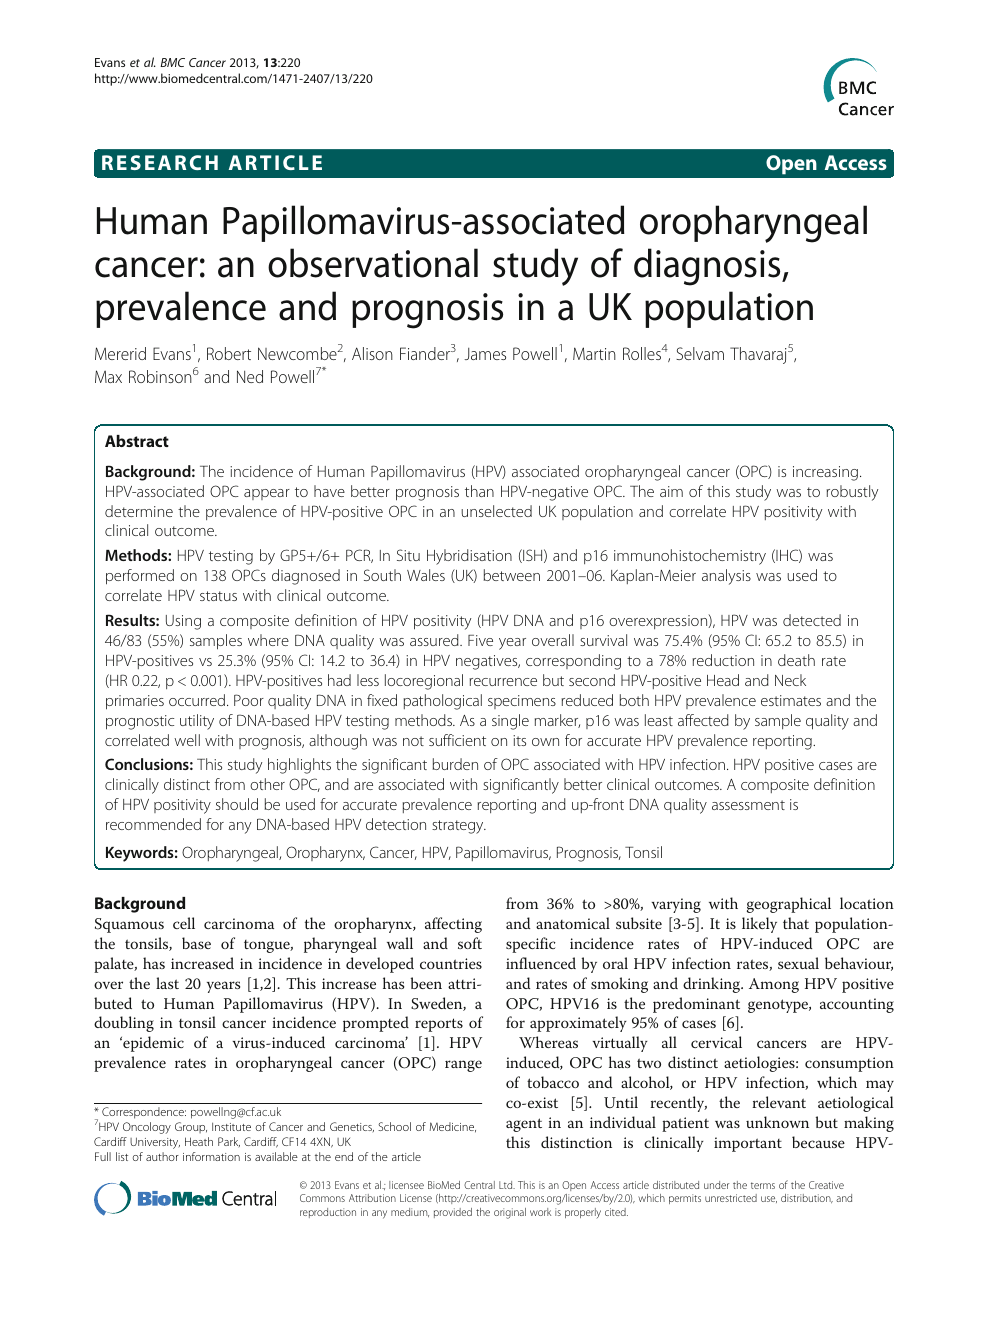 Study of human papillomavirus and oropharyngeal cancer, Hpv positive oropharyngeal cancer